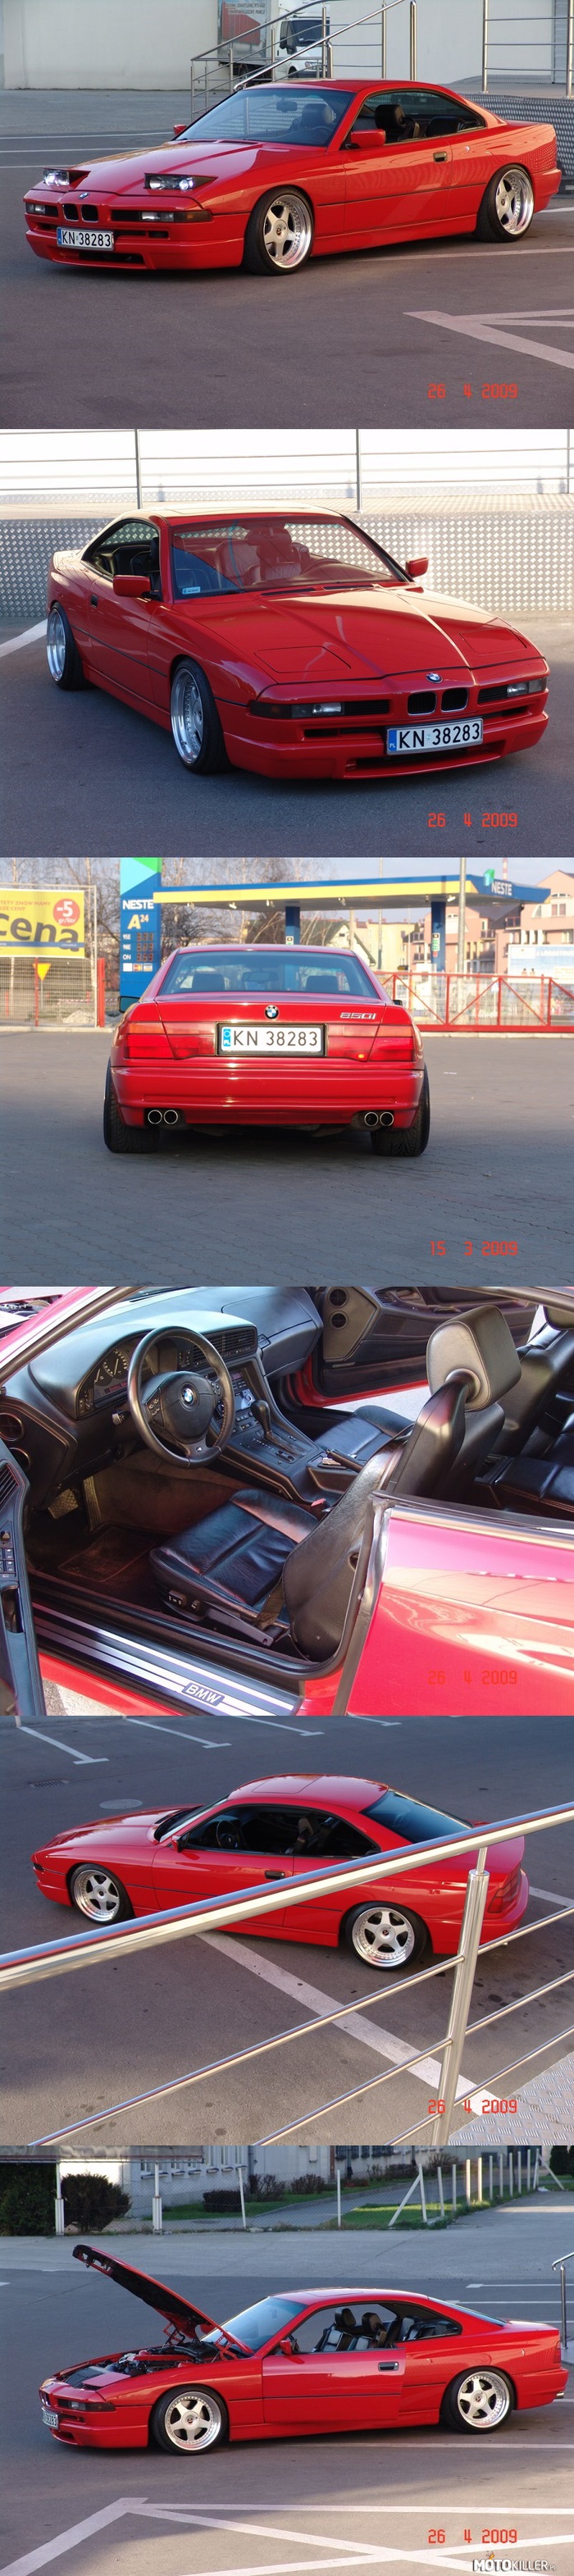 BMW E31 850i 1991 – Silnik V-12 5.0L 300 KM. Felgi 18 calowe, trzyczęściowe i skręcane 9.5J przód i 11J tył. 